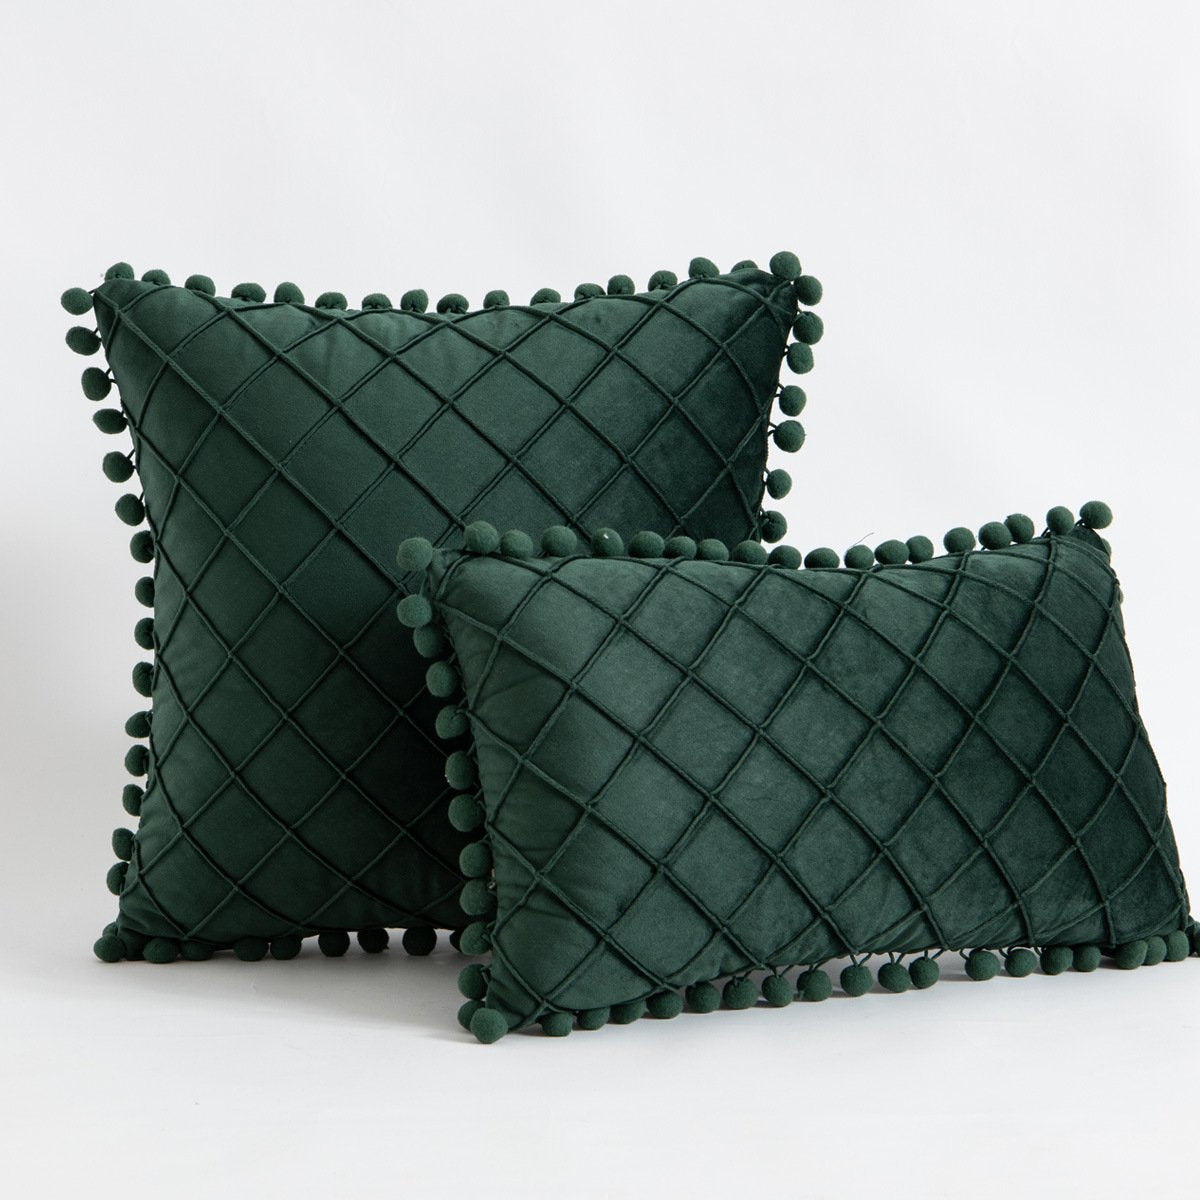 Fashionable 260g Velvet Diamond Texture Pom-Pom Pillow Cover